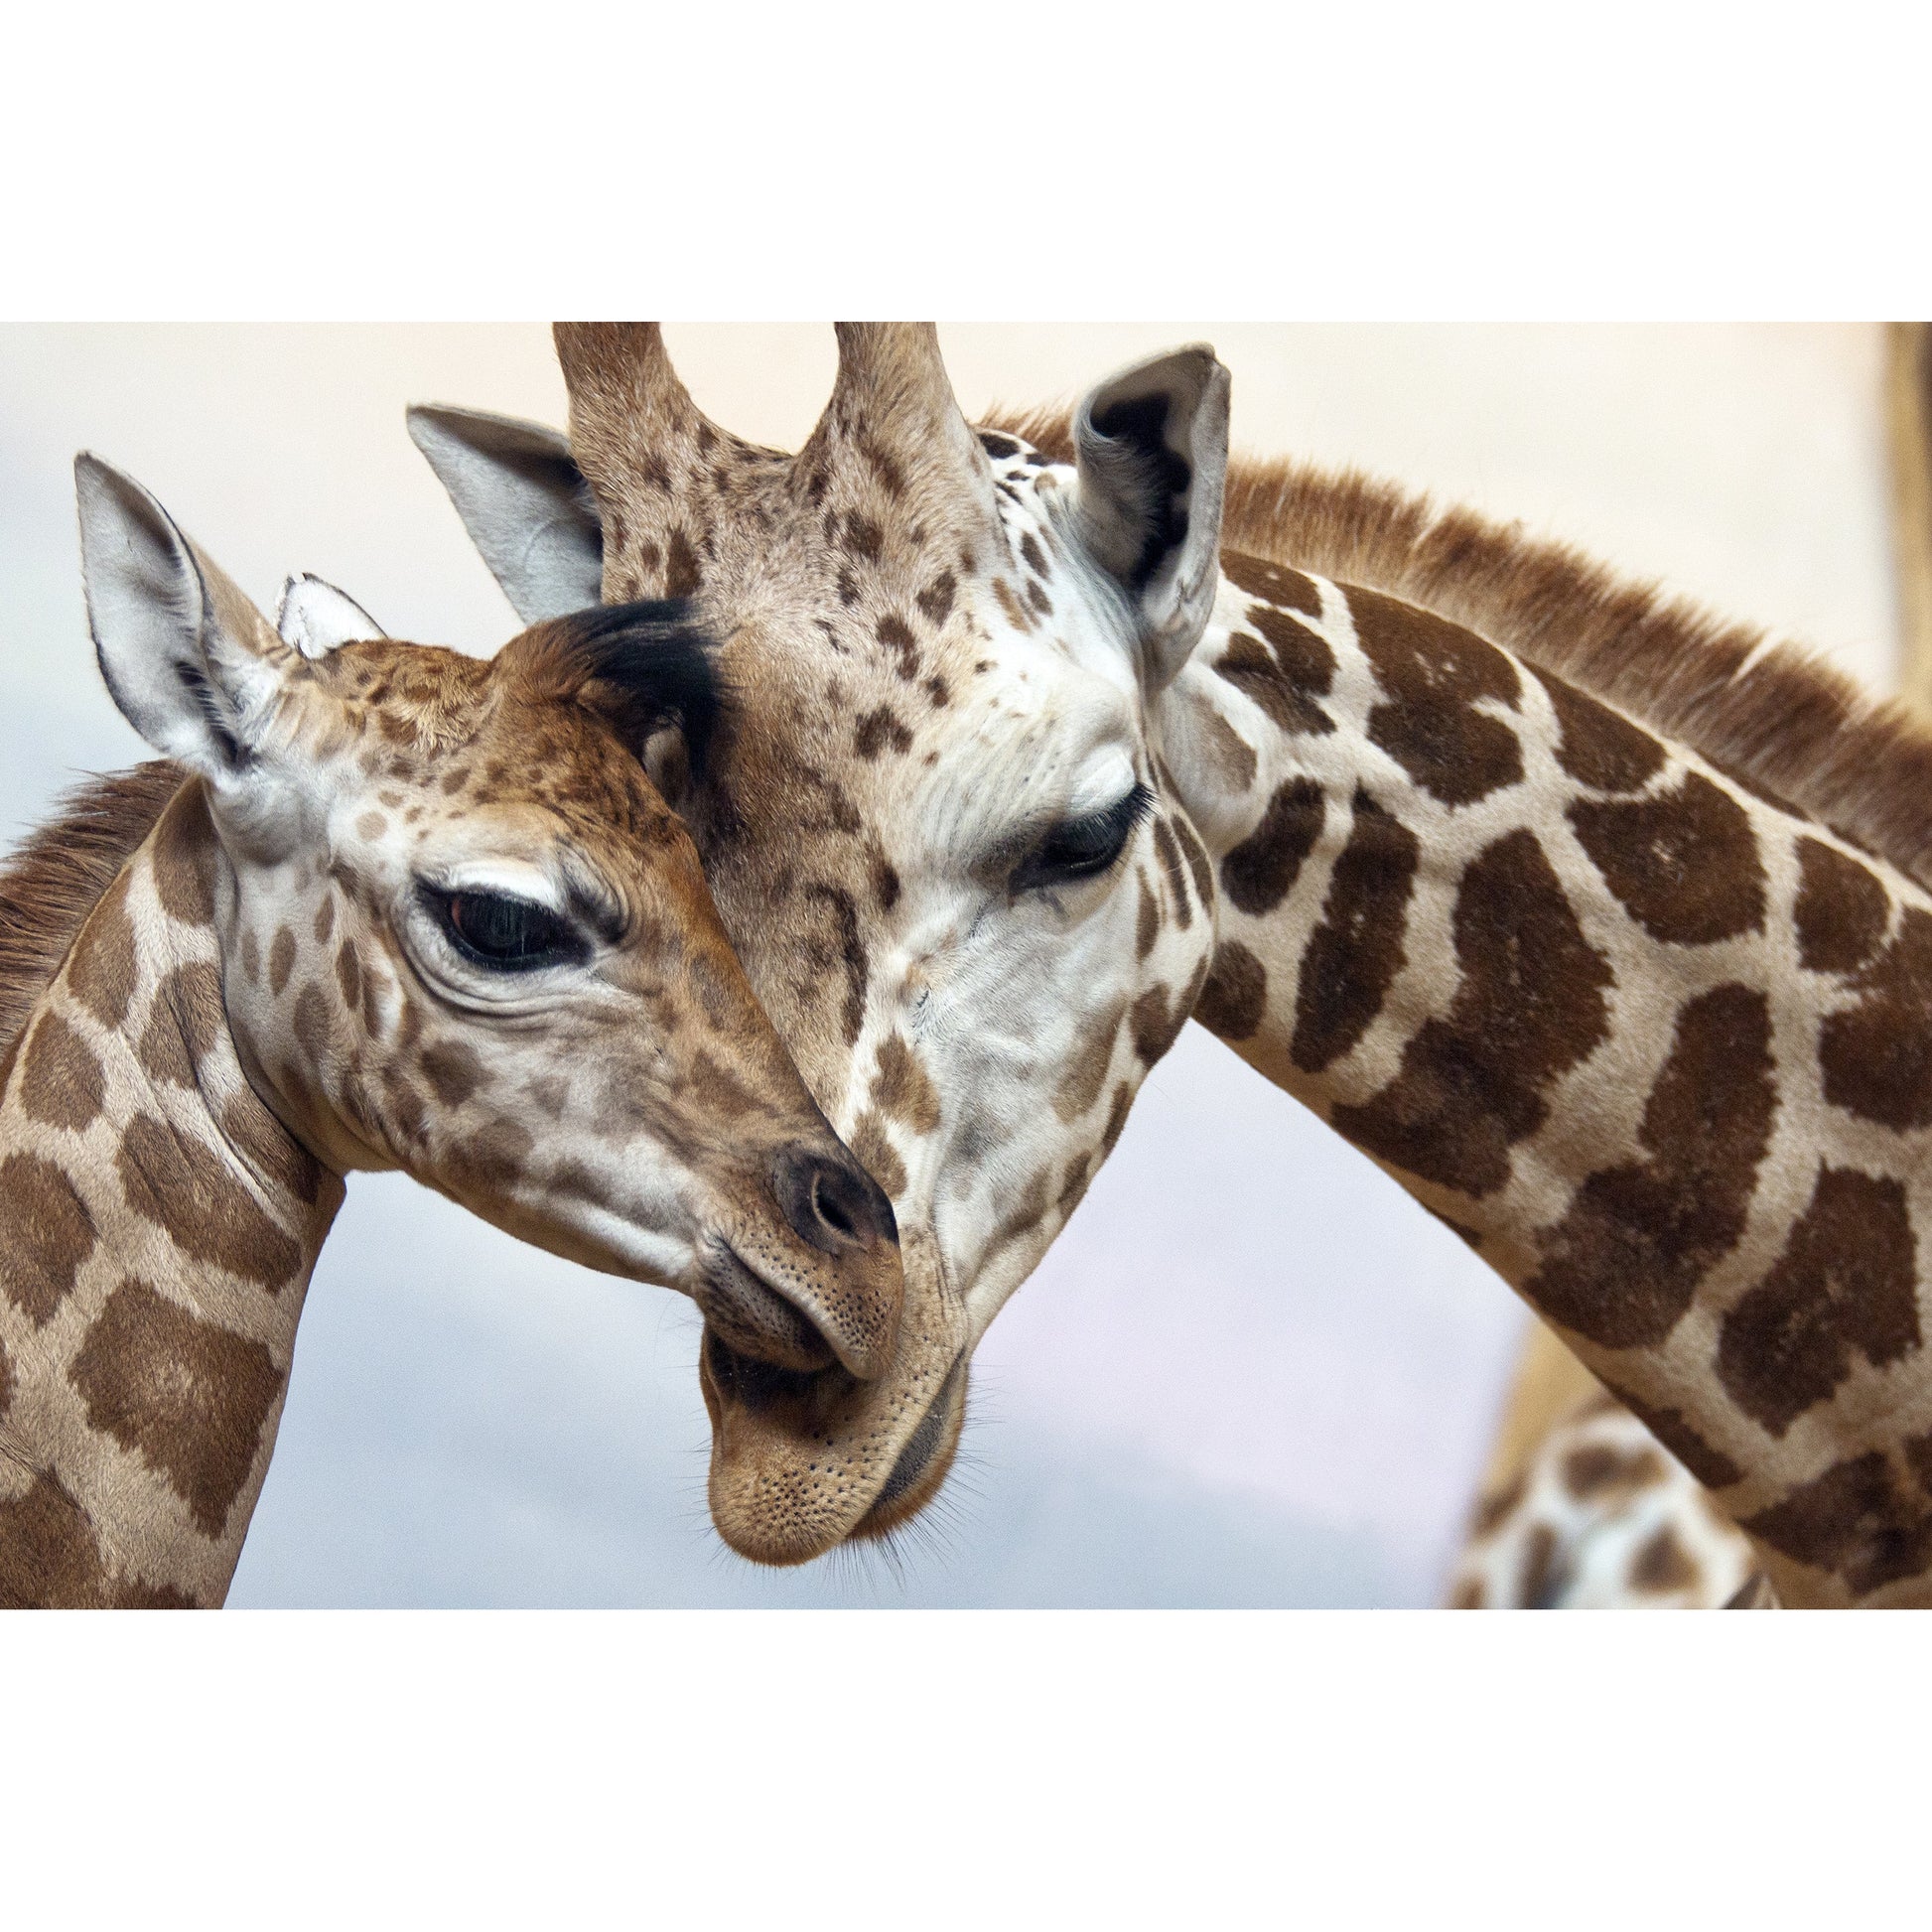 Spritzschutz - Two Giraffes